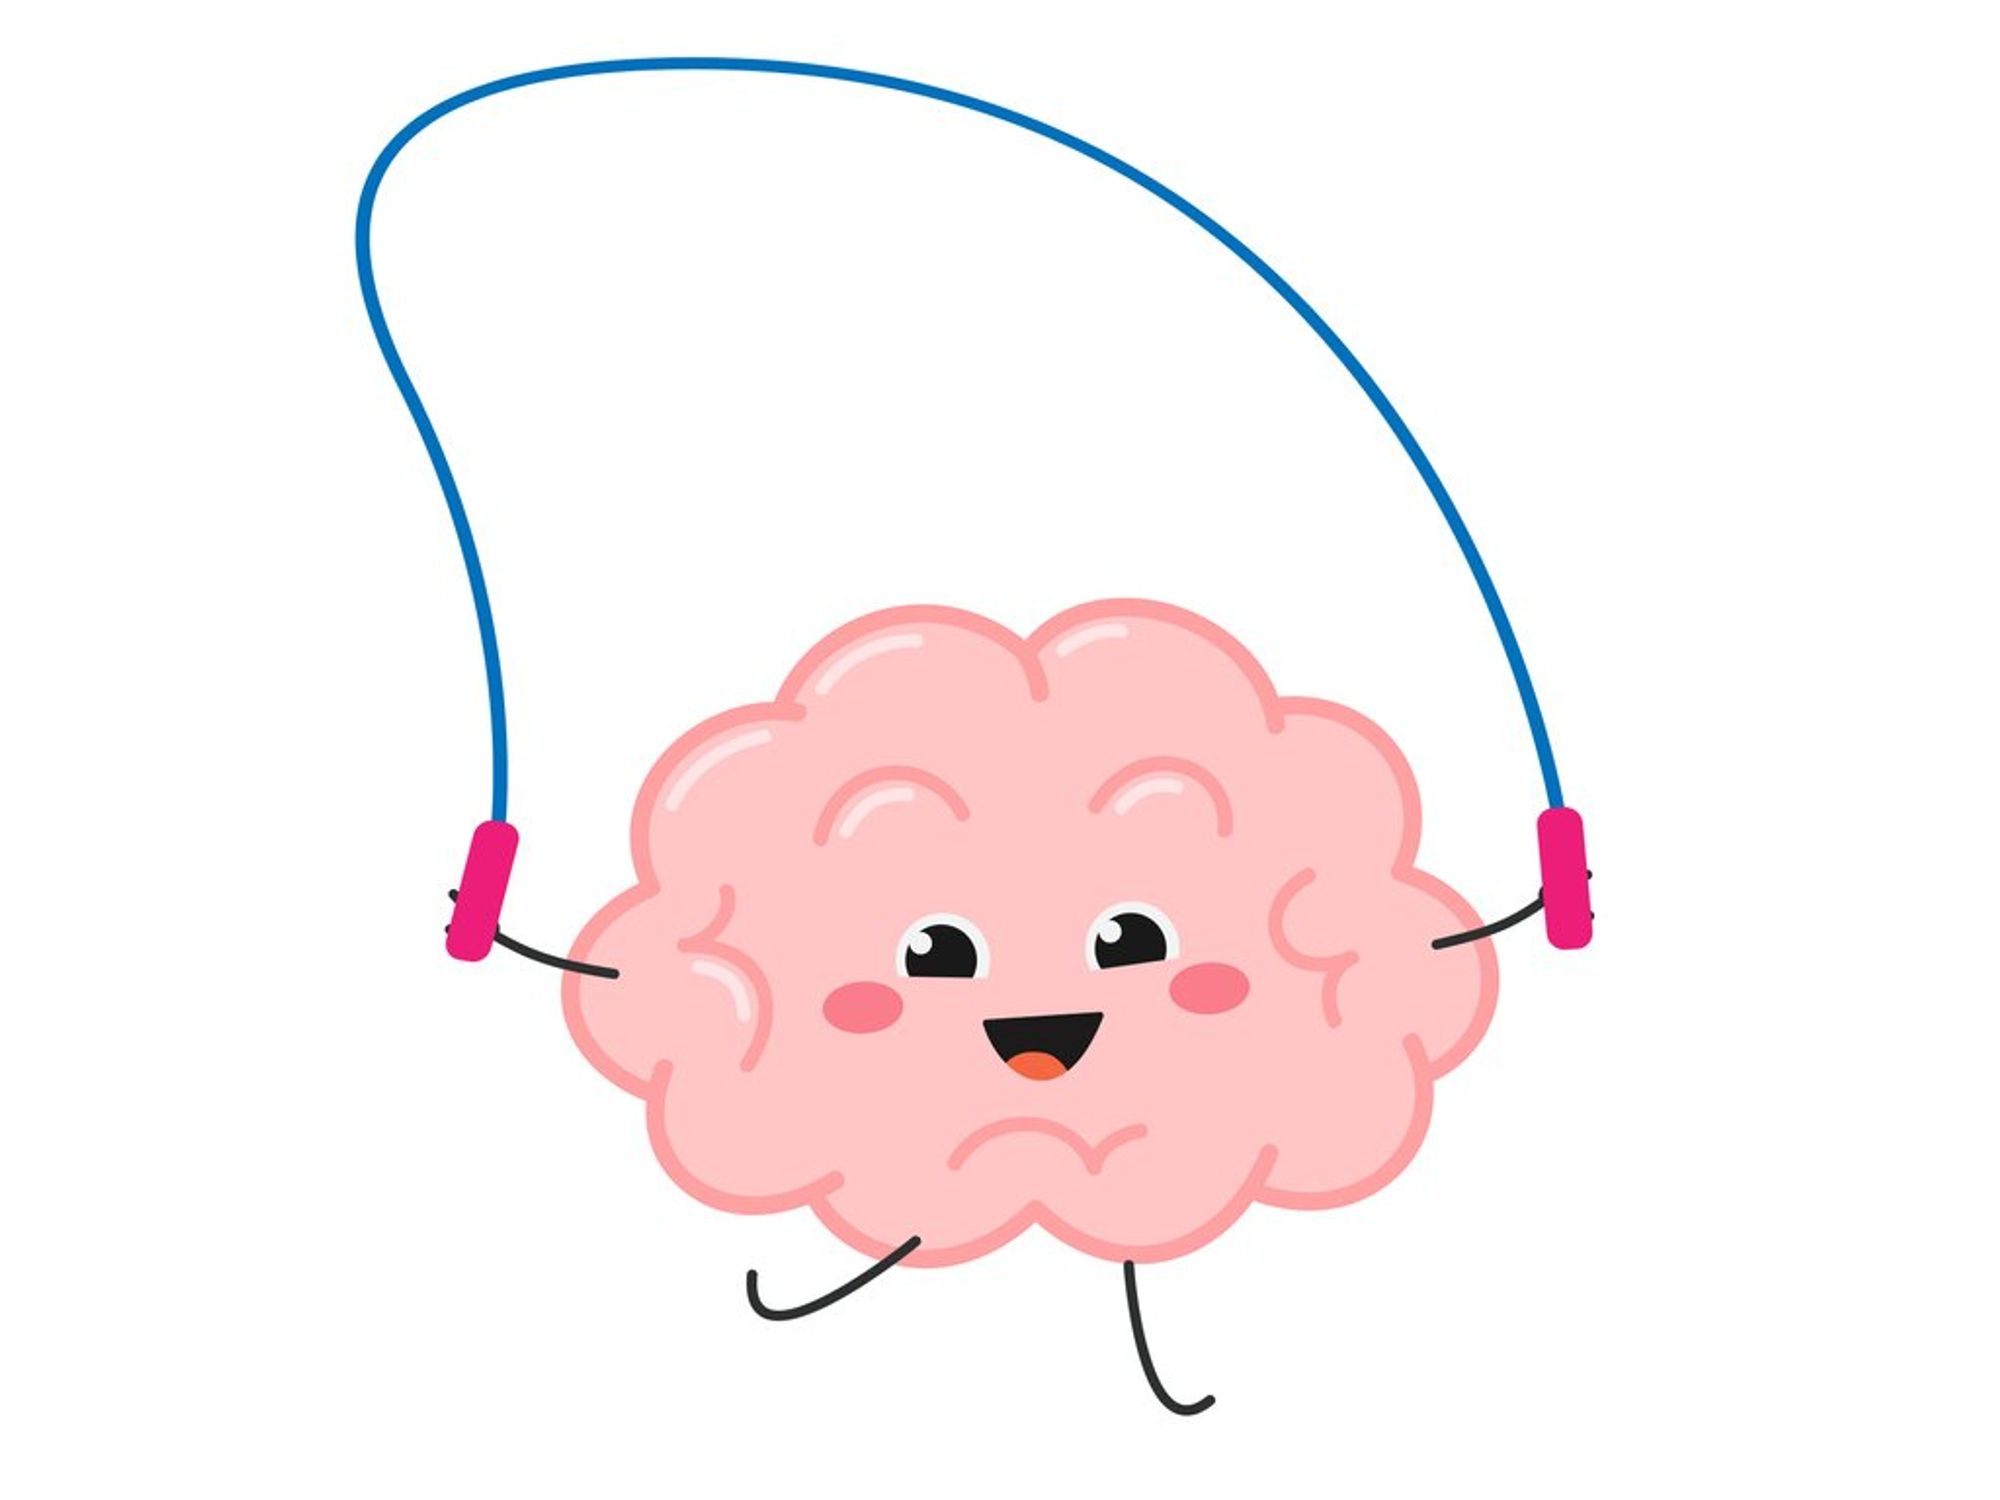 Otak kartun lucu yang lucu memainkan lompat tali